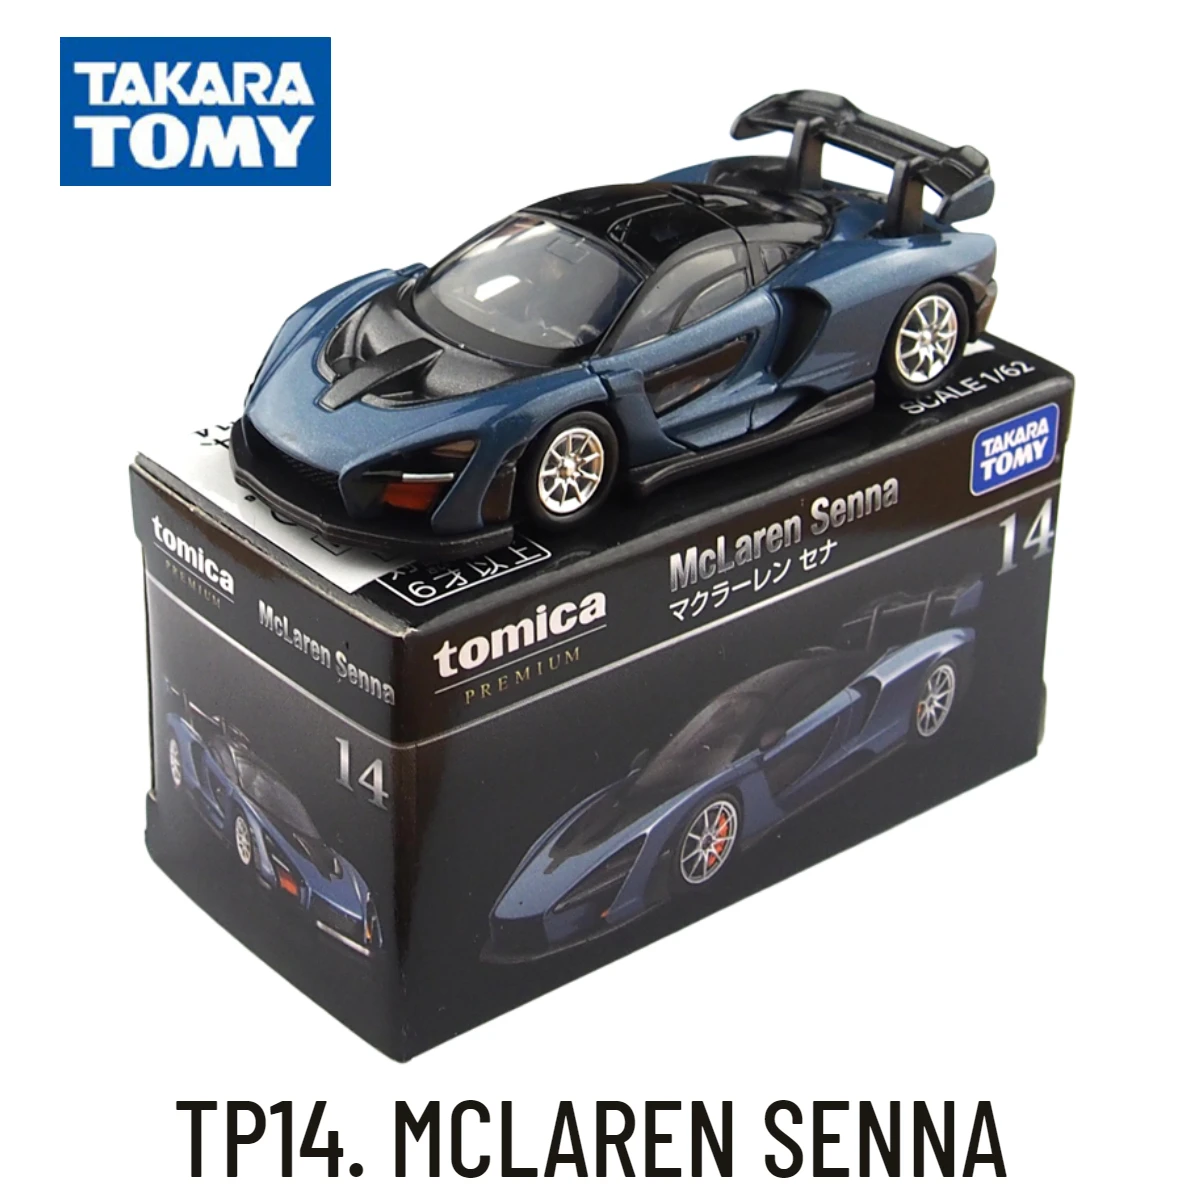 takara-tomy-tomica-premium-tp-modelo-de-coche-a-escala-mclaren-senna-replica-de-coleccion-regalo-de-navidad-para-ninos-juguetes-para-ninos